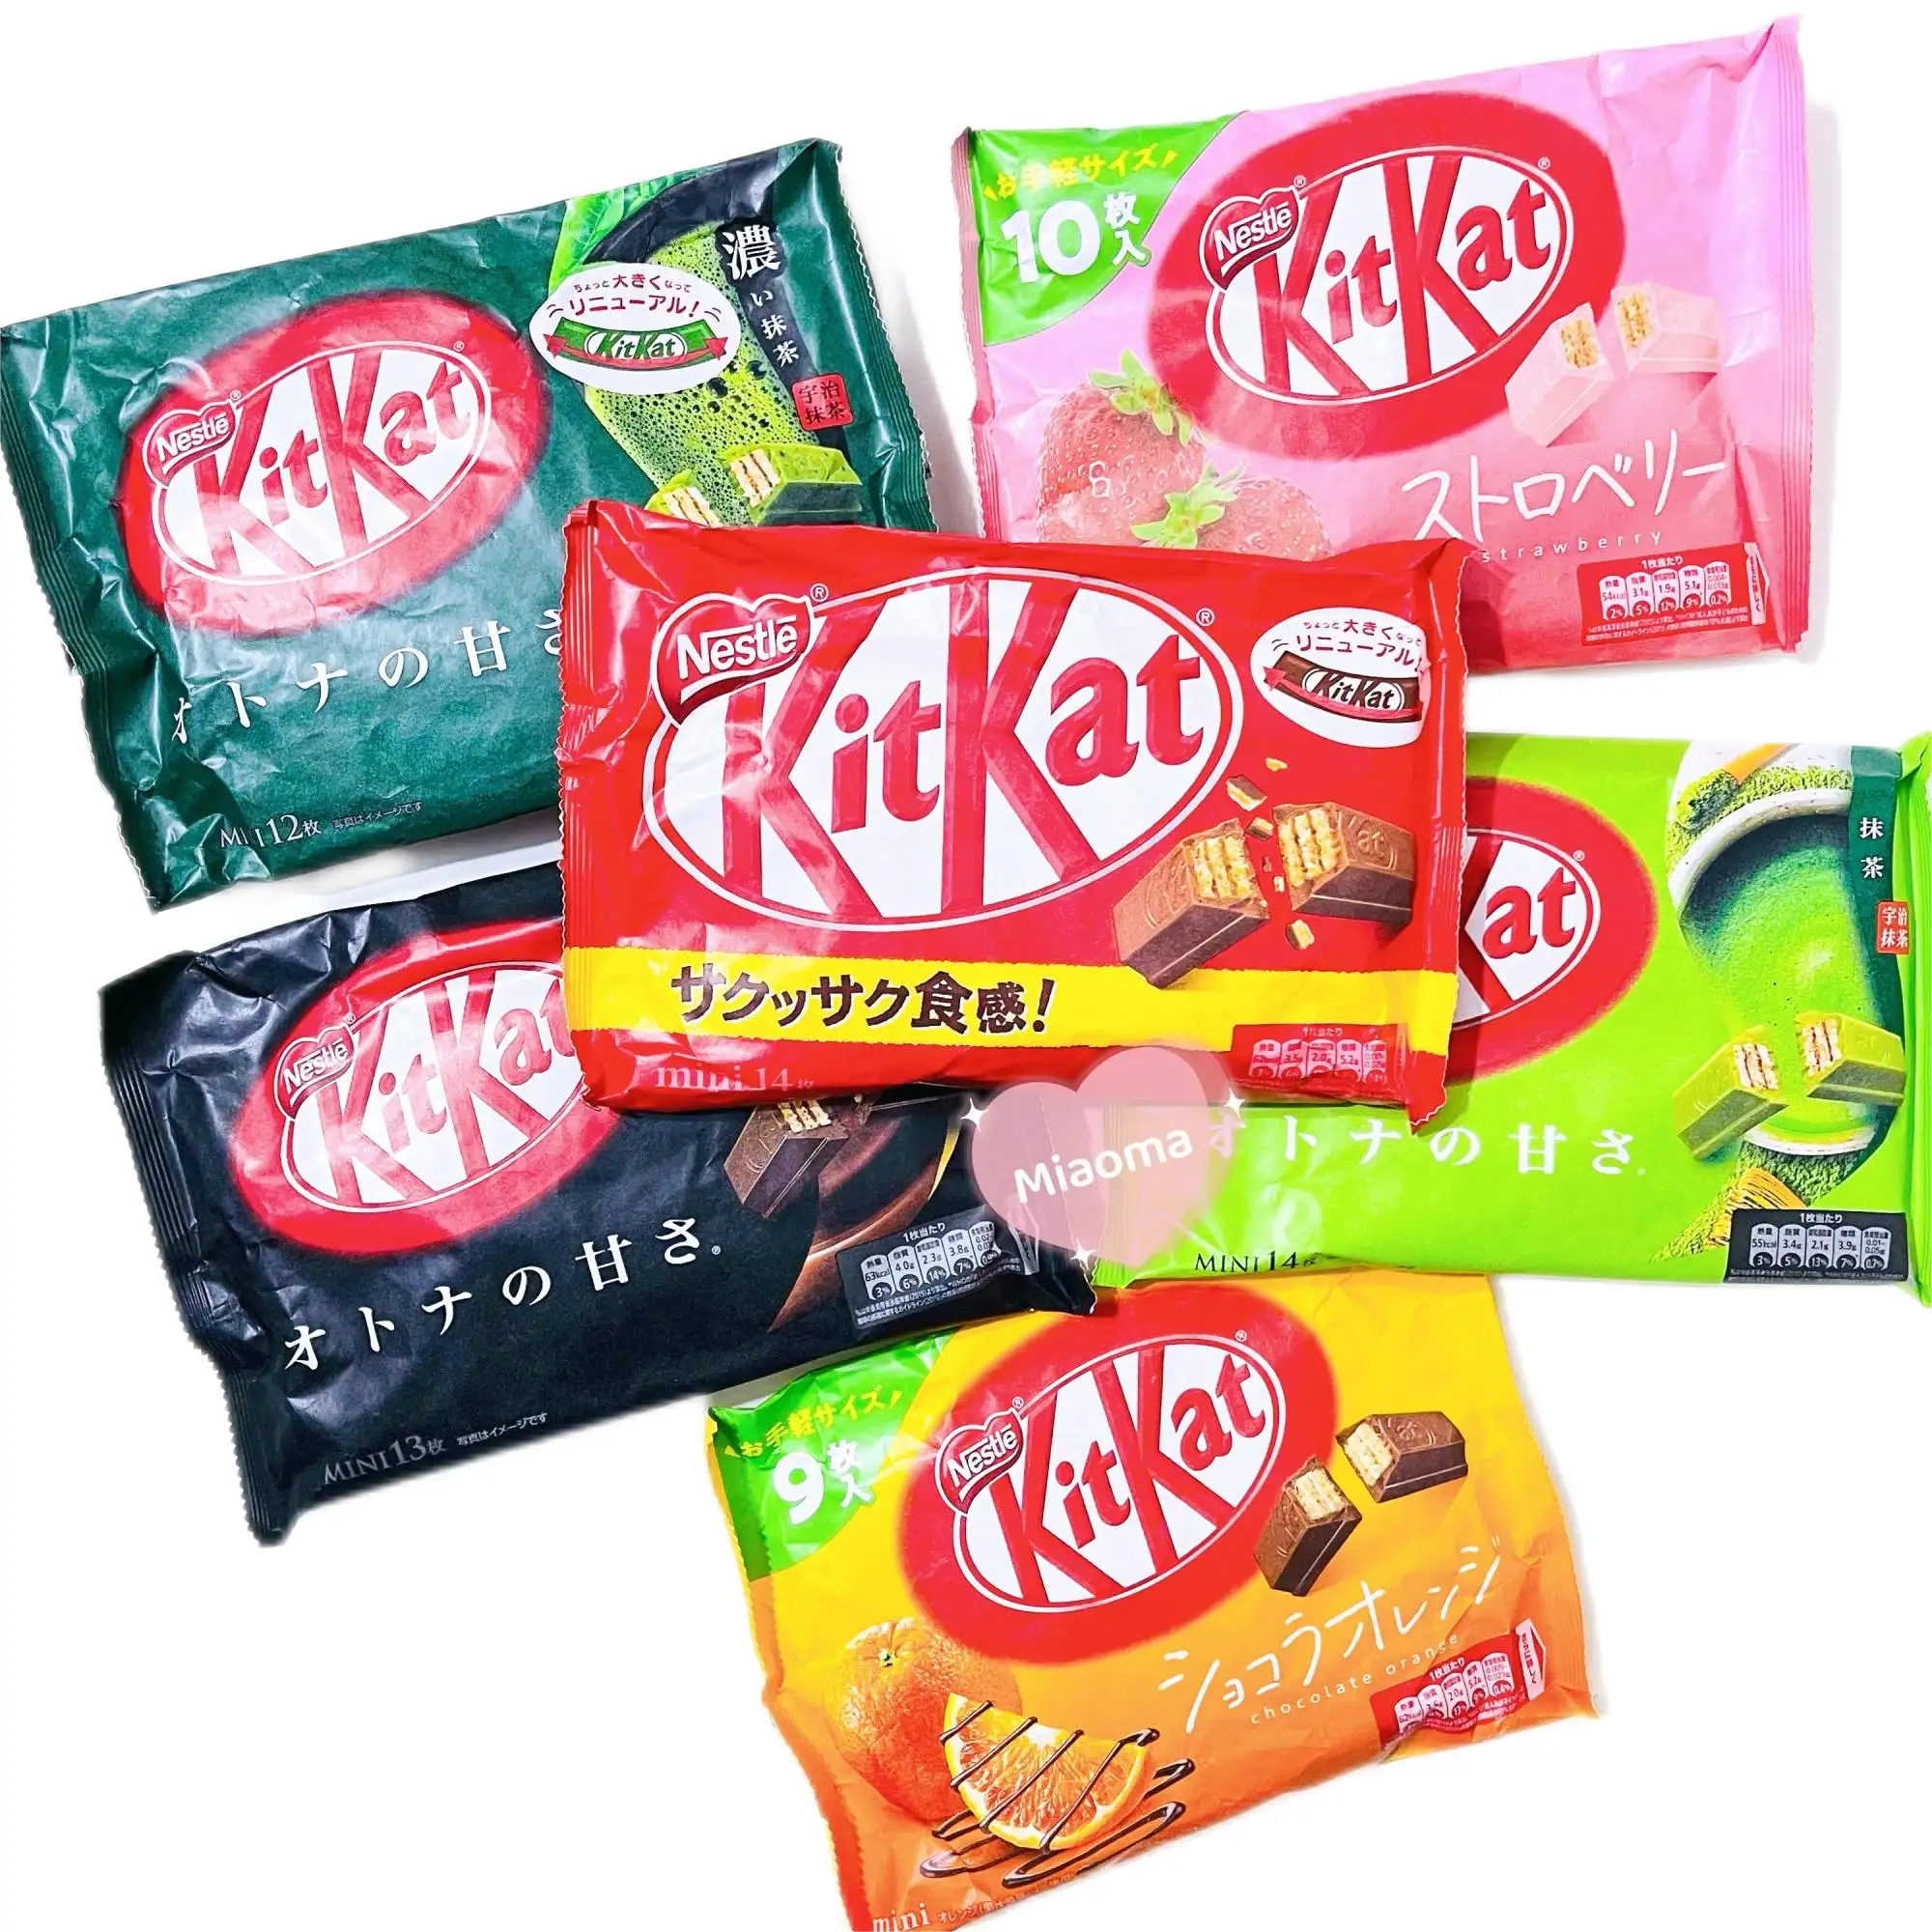 Japon n-e-s-t-l-e Kit kat çikolata ve tatlılar şeker egzotik aperatifler şeker şekerleme egzotik şeker